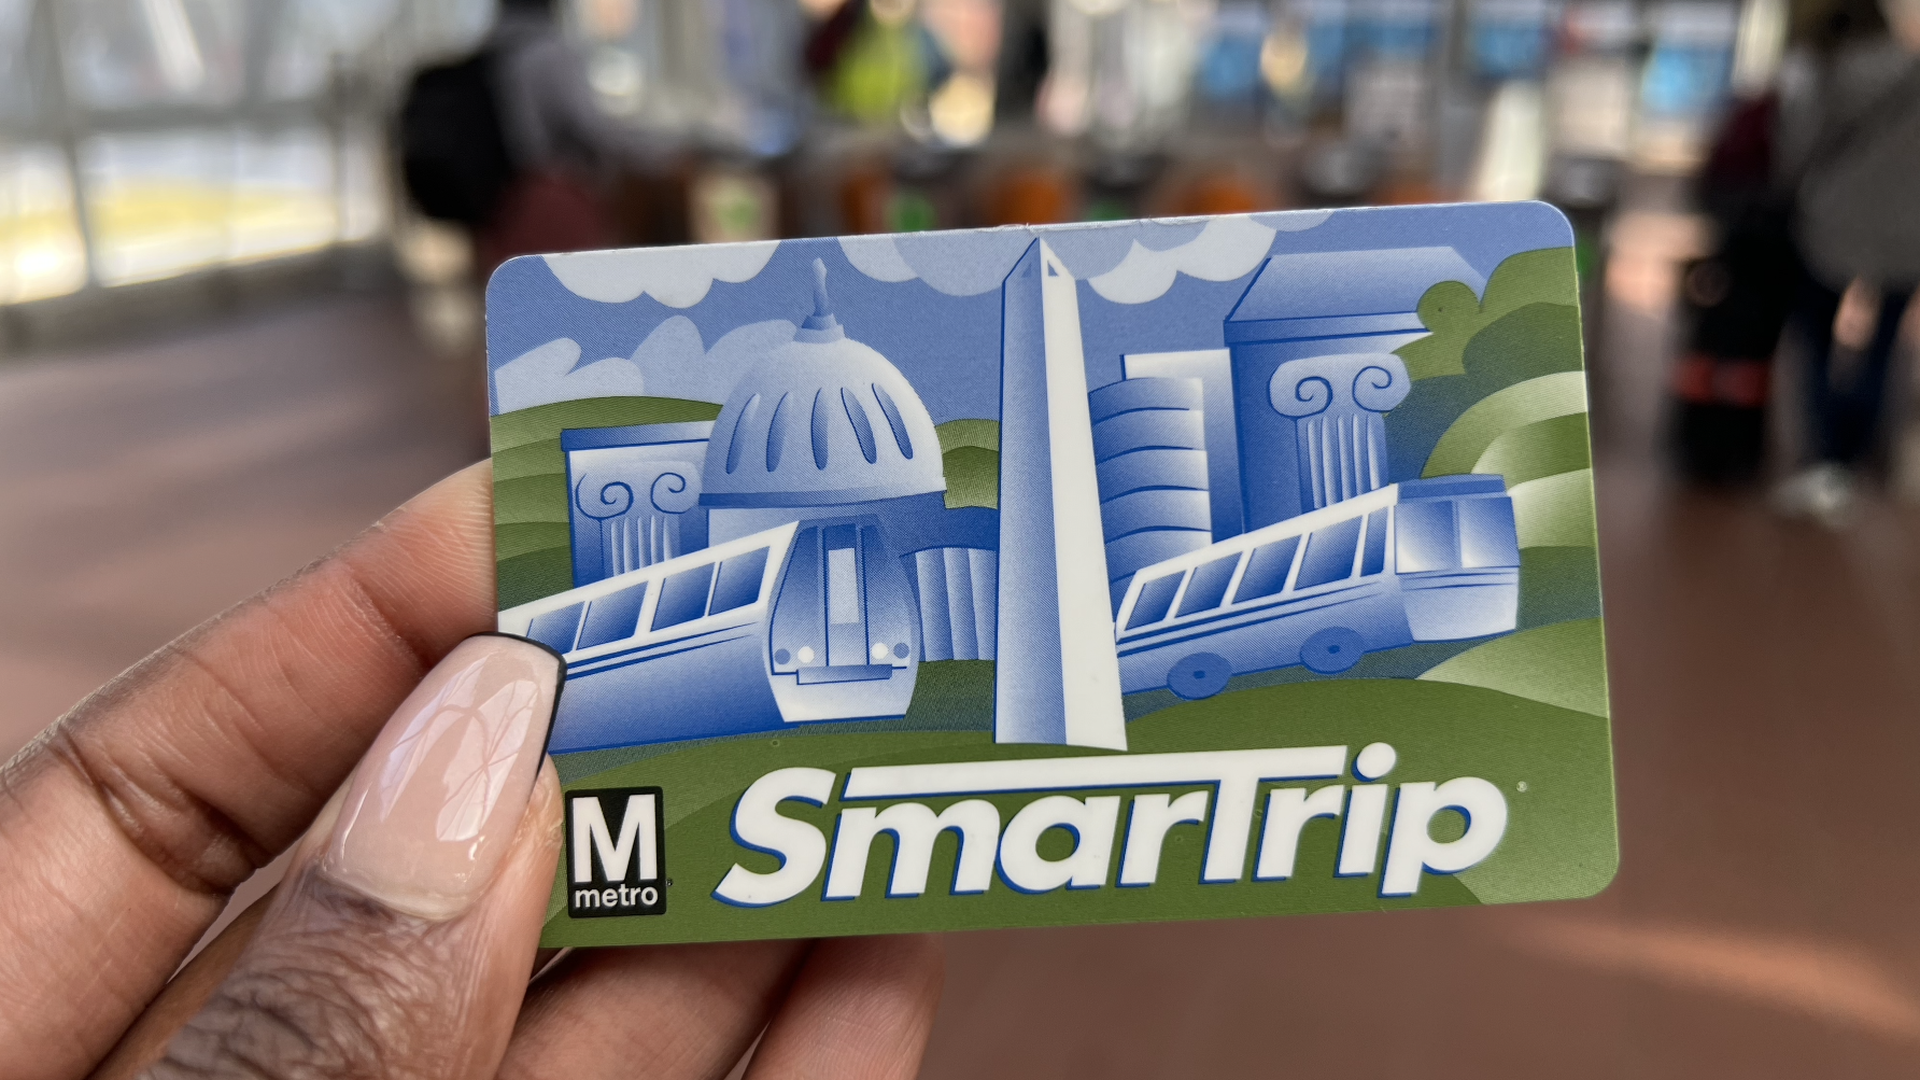 A SmartTrip Metro card.